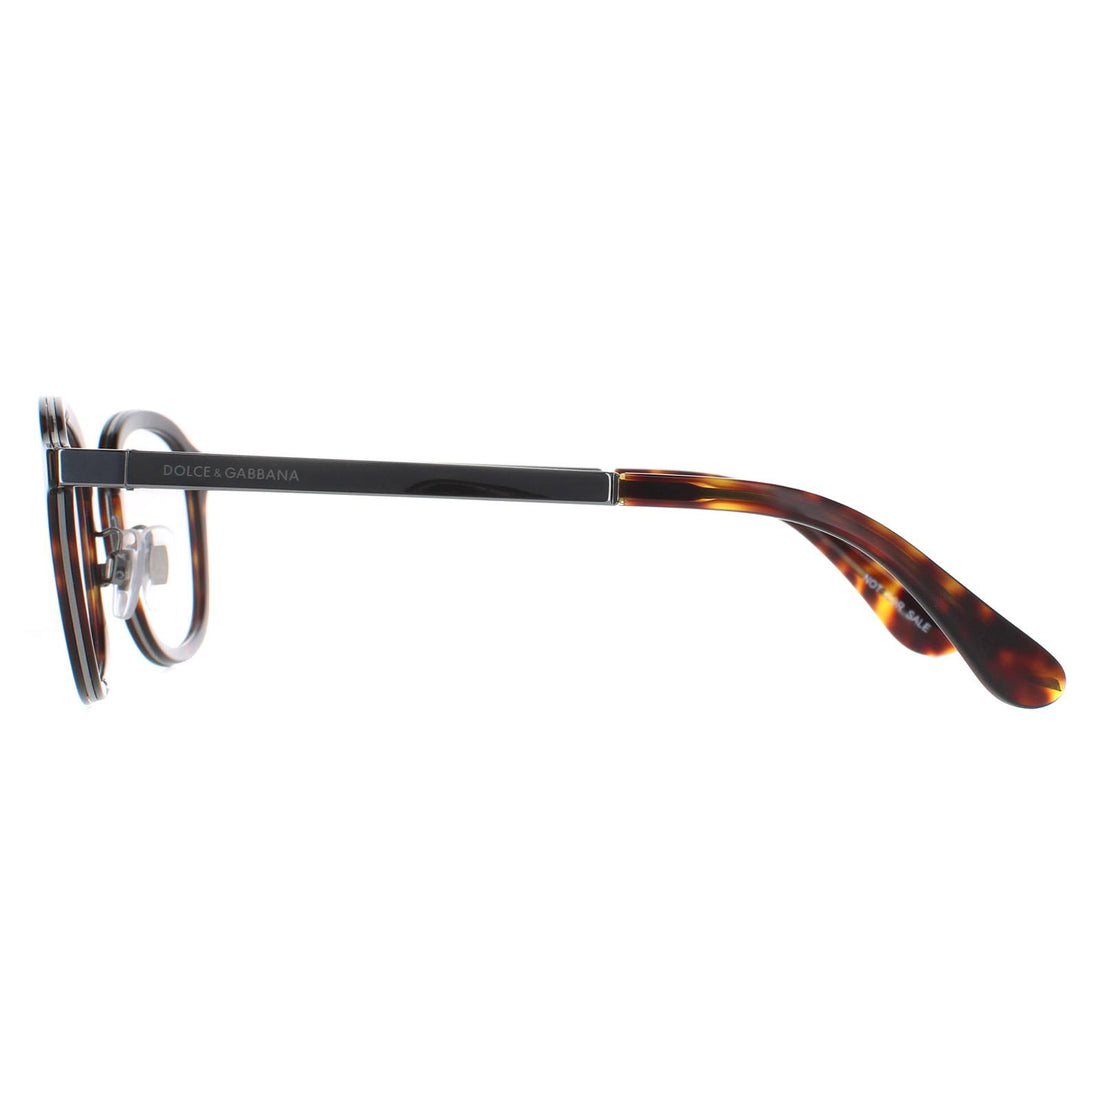 Dolce & Gabbana DG 1296 Glasses Frames